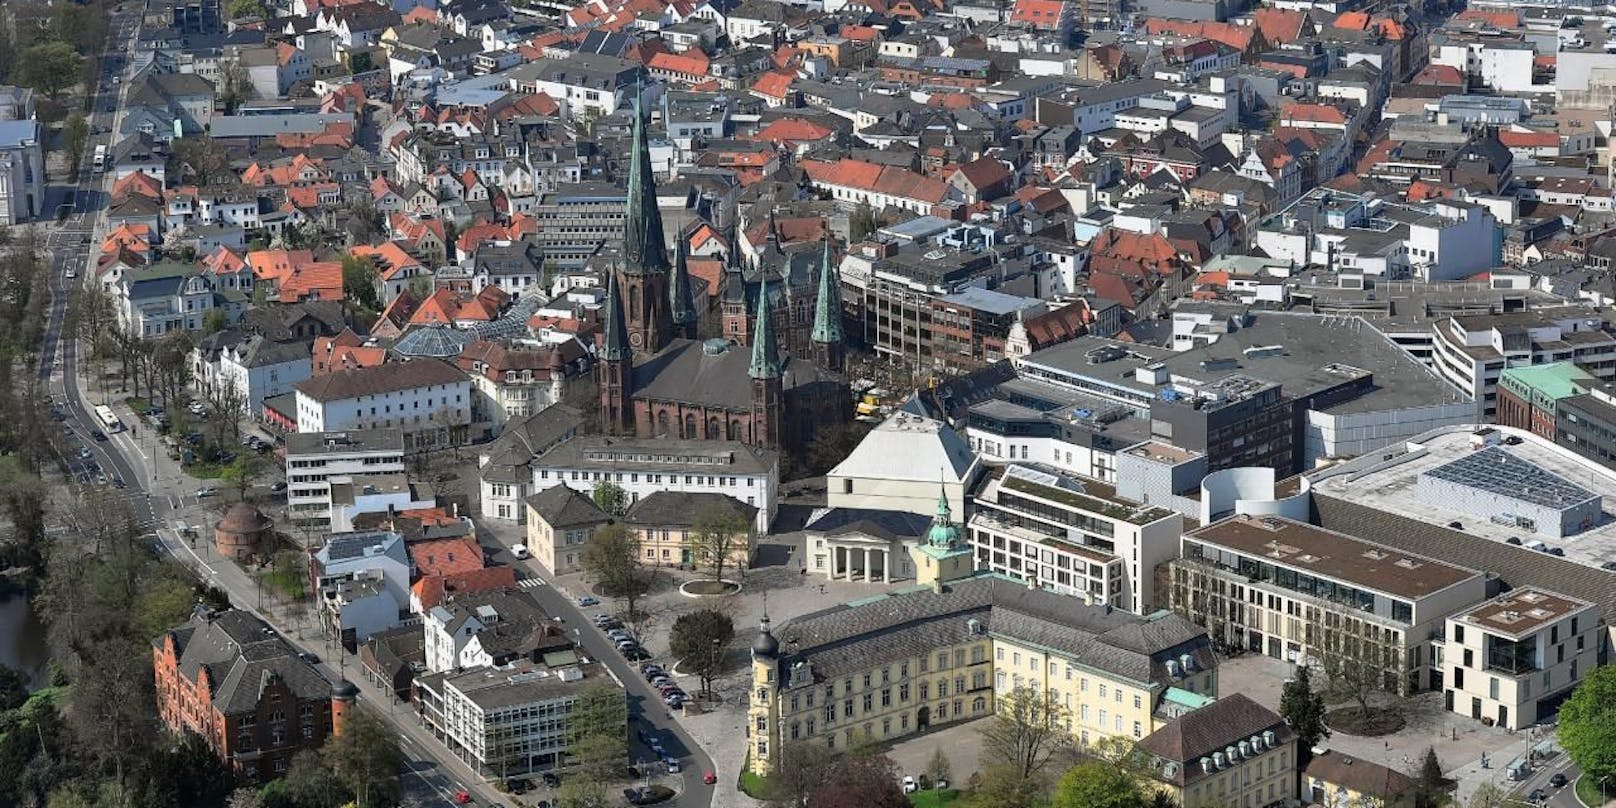 Die Innenstadt von Oldenburg aus der Luft gesehen.